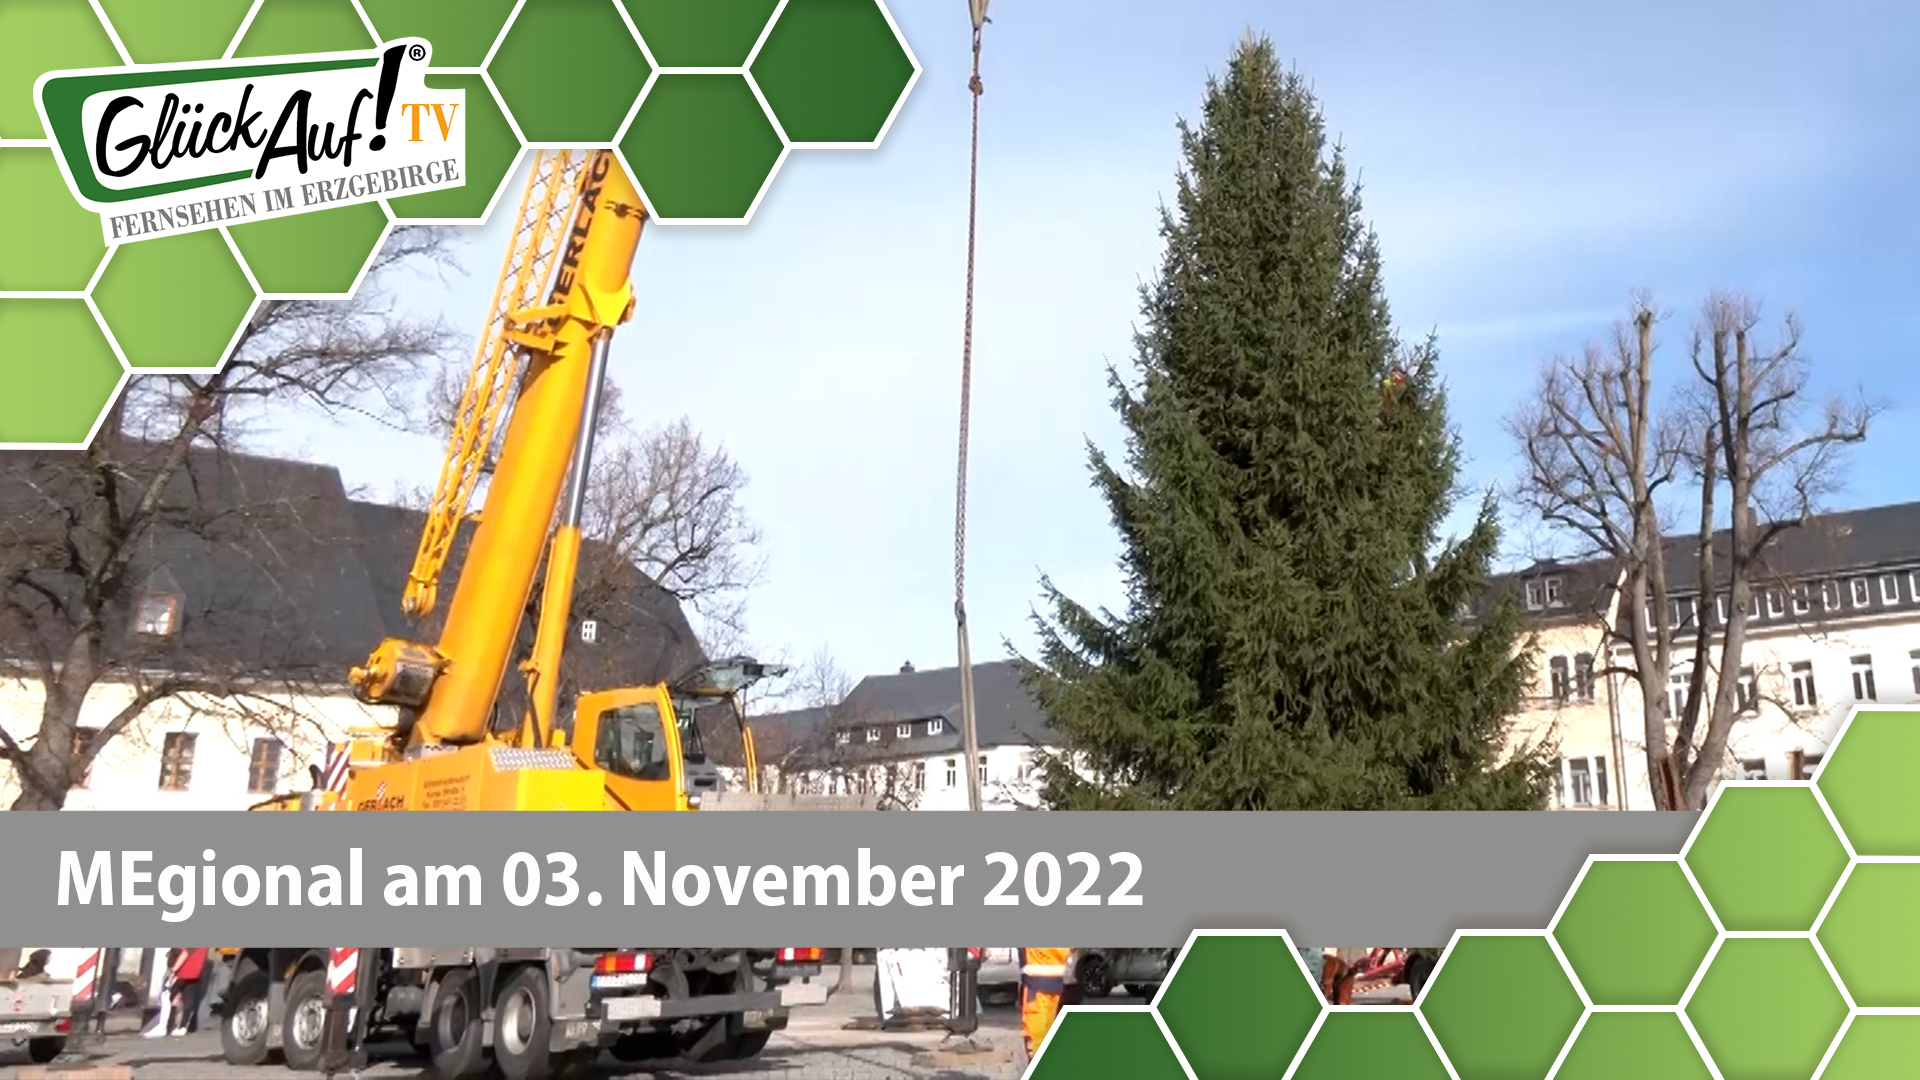 MEgional am 03. November 2022 - mit dem Weihnachtsbaum in Marienberg